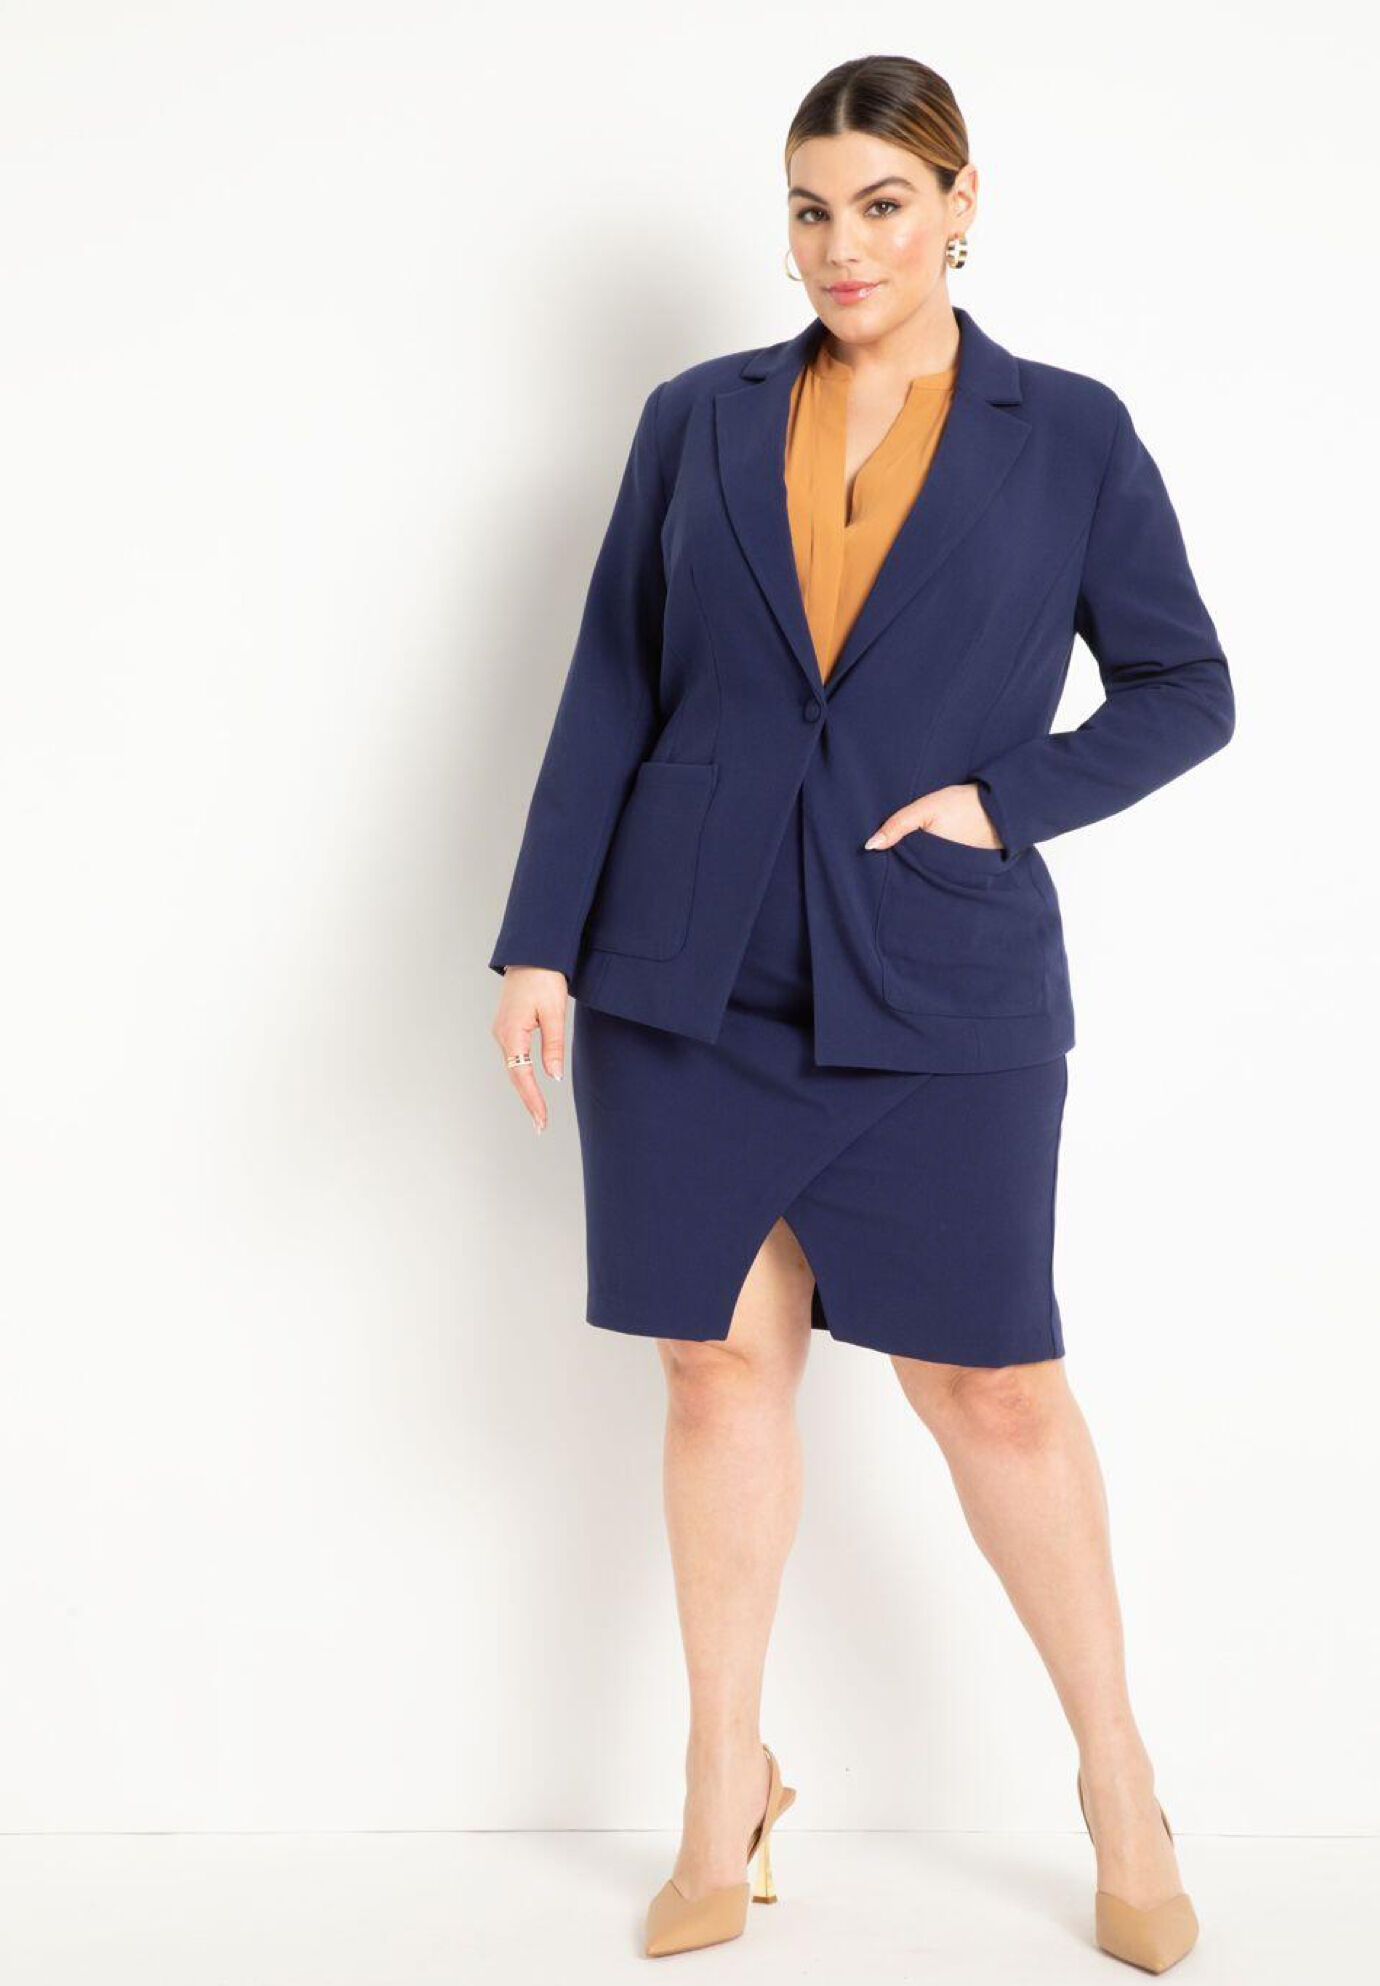 Plus Size Women The 365 Suit Wrap Pencil Skirt By (size 16)